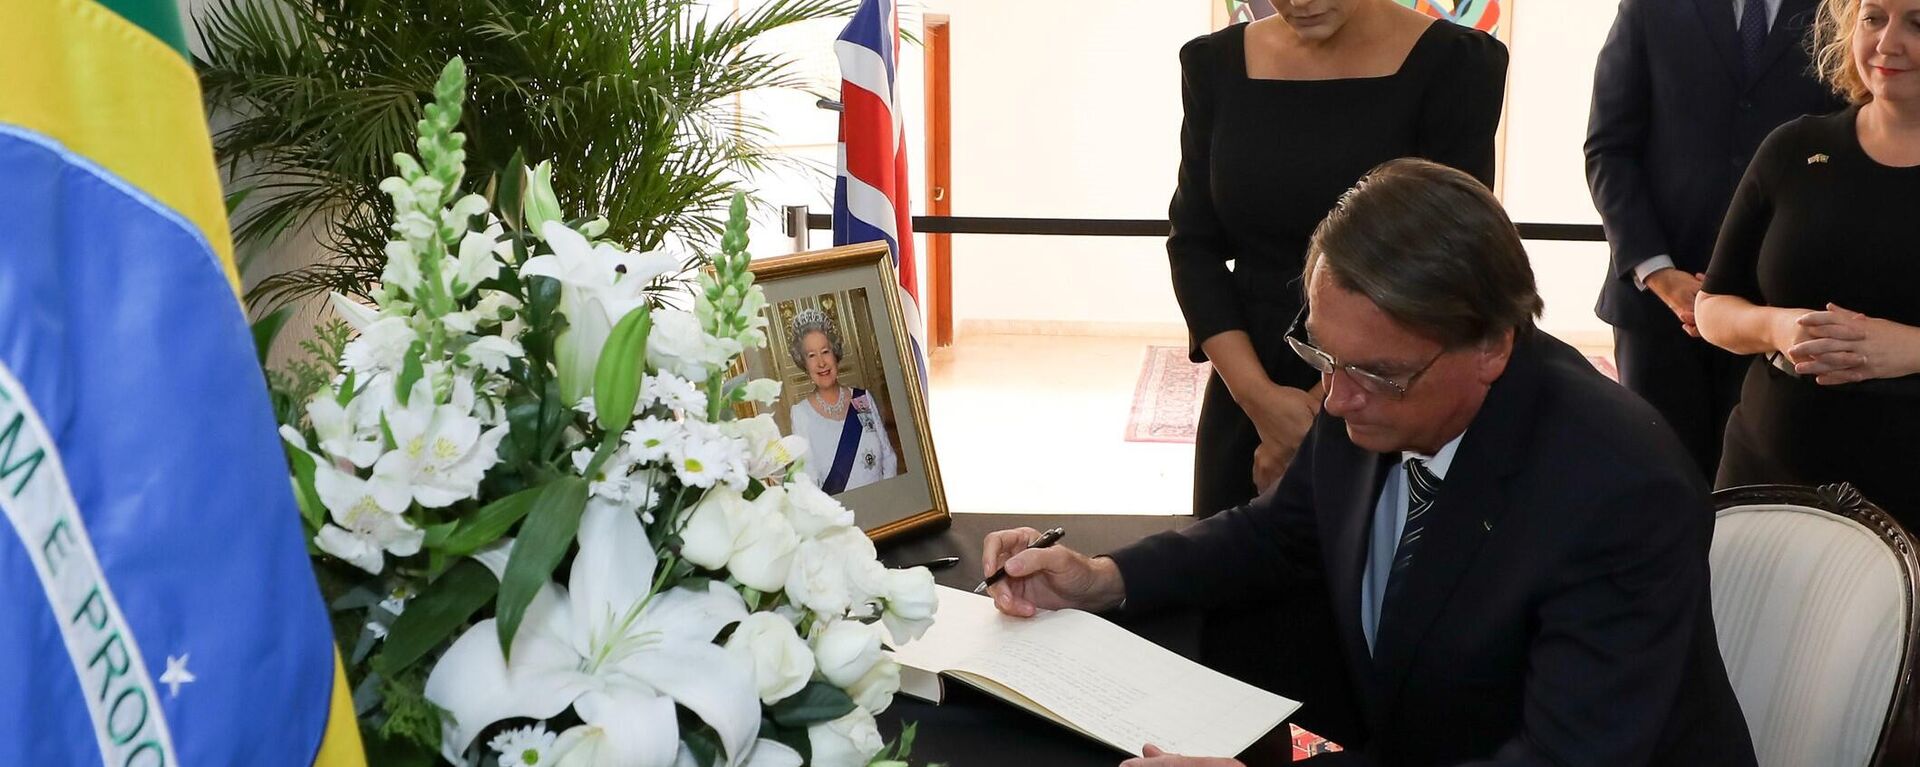 O presidente Jair Bolsonaro assina o livro de condolências à Rainha Elizabeth II na Embaixada do Reino Unido em Brasília. 12 de setembro de 2022. - Sputnik Brasil, 1920, 18.09.2022